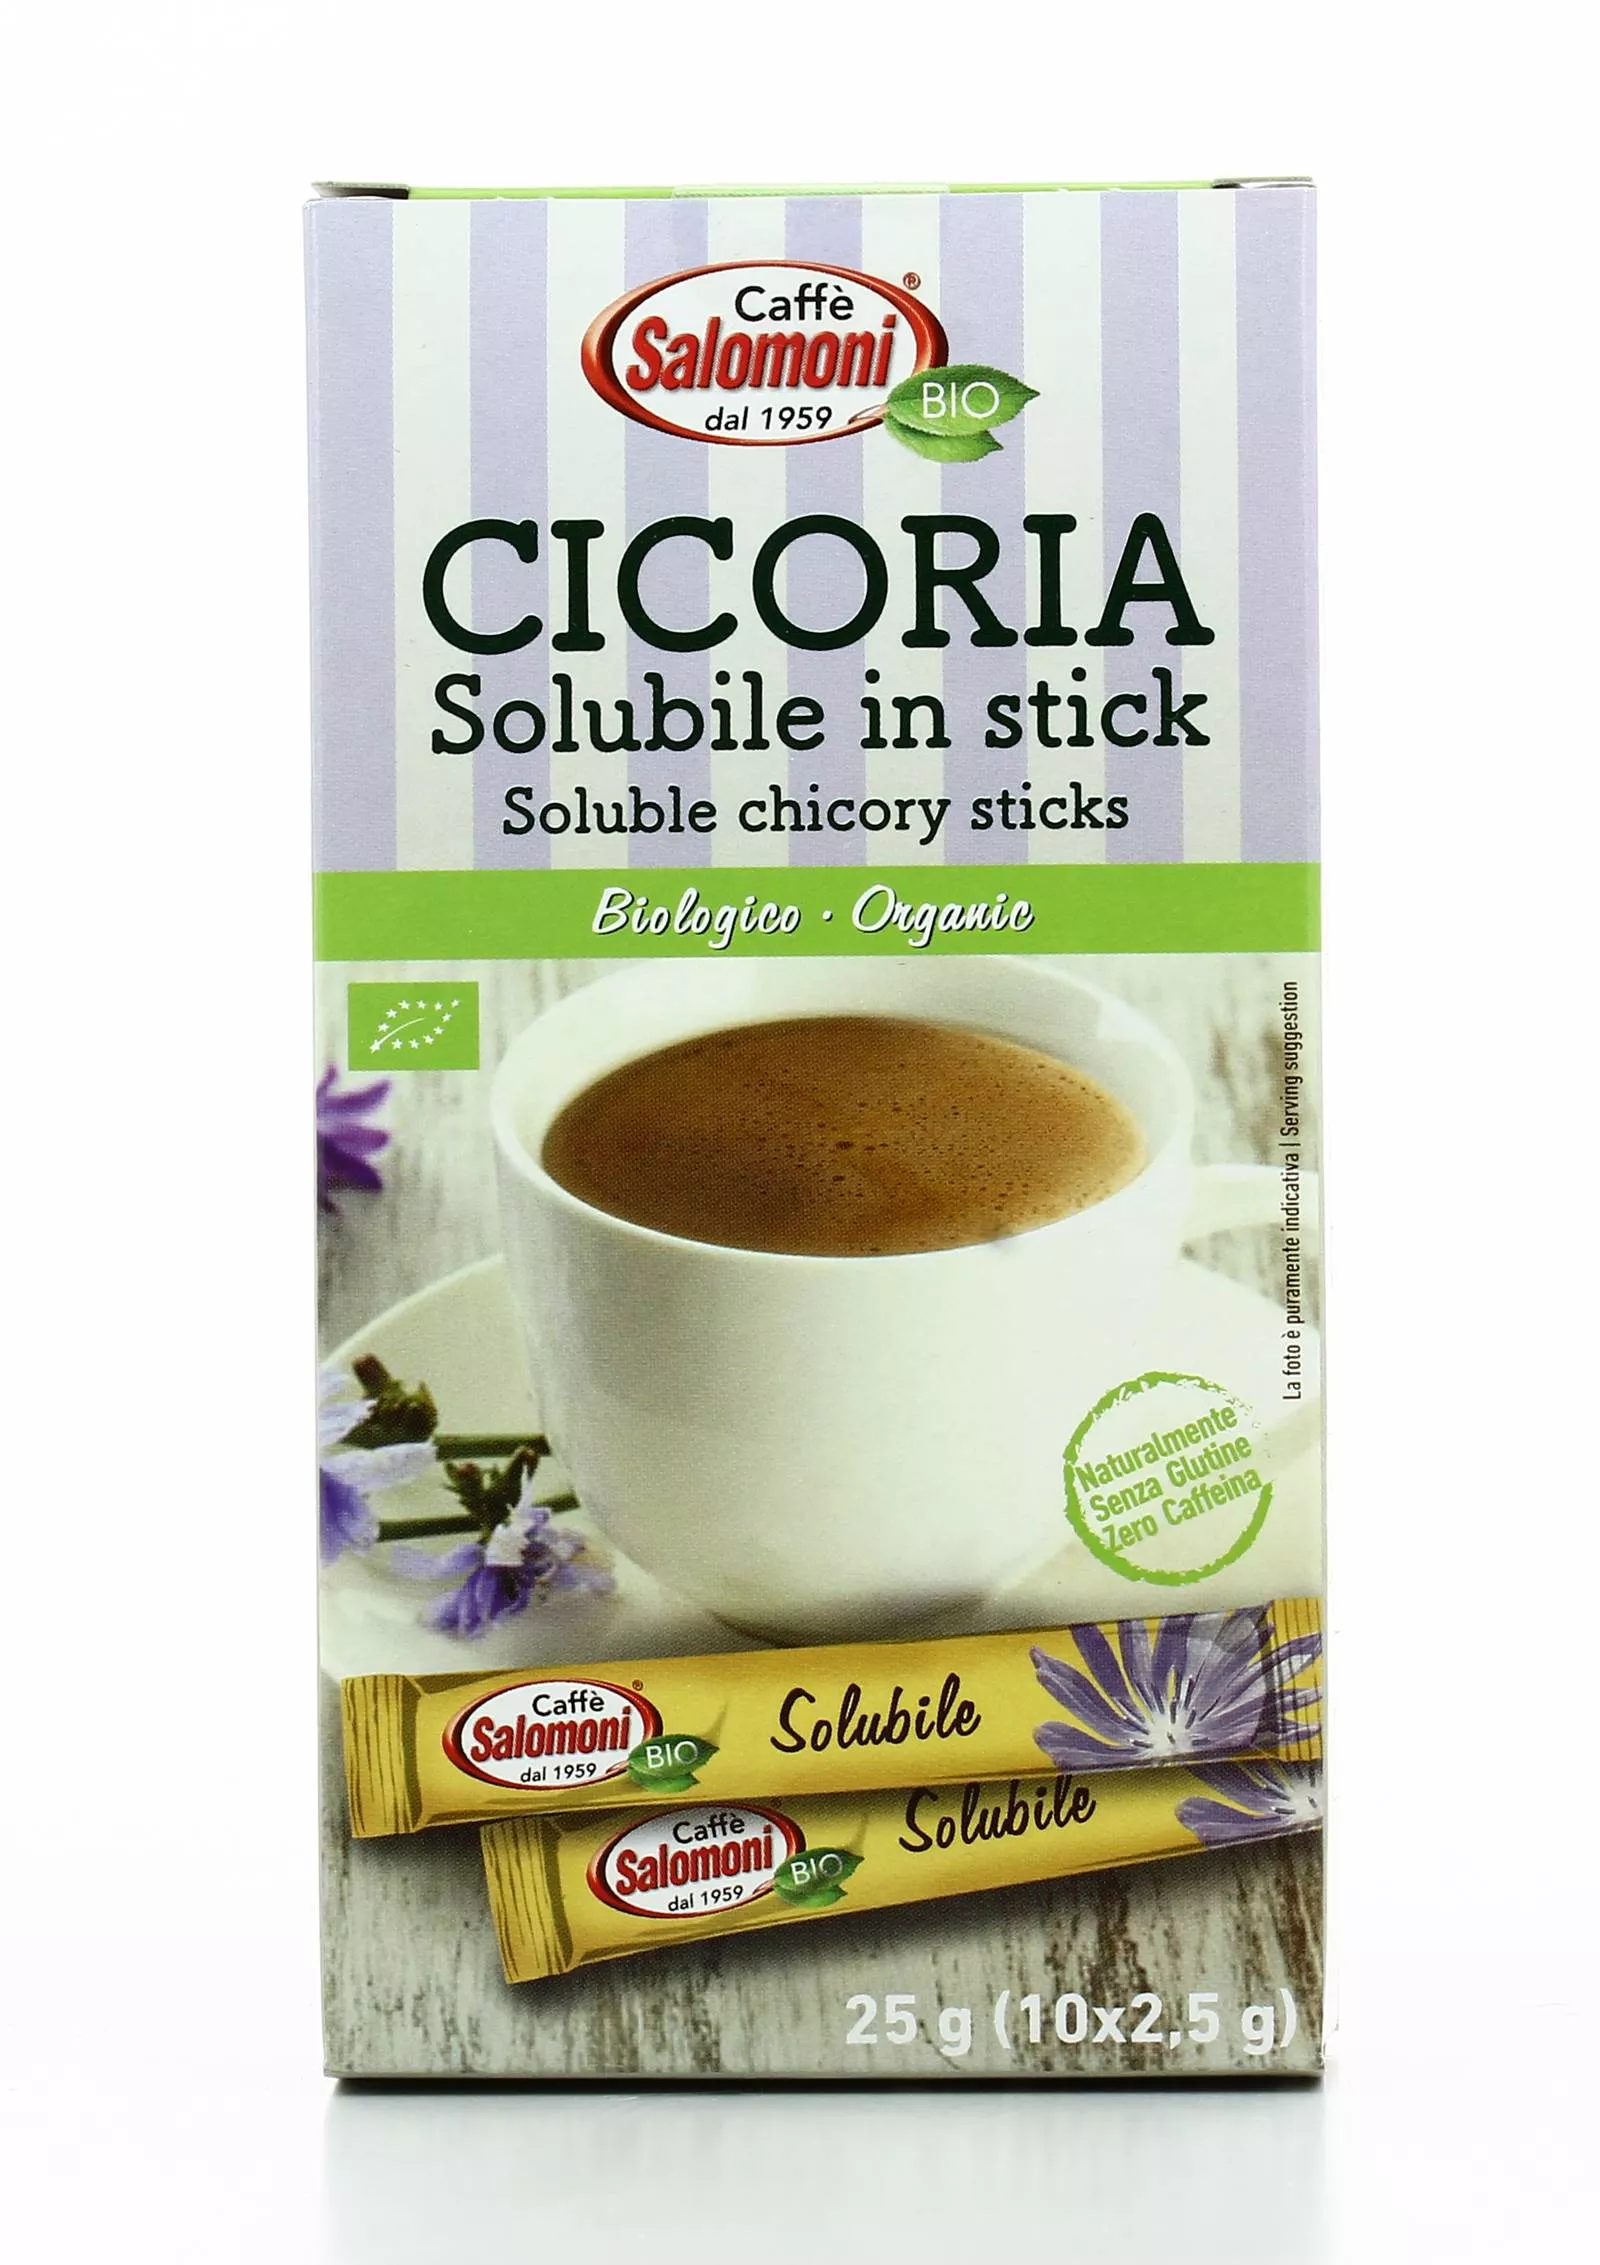 Cicoria Solubile in Stick Senza Glutine - Caffè Salomoni